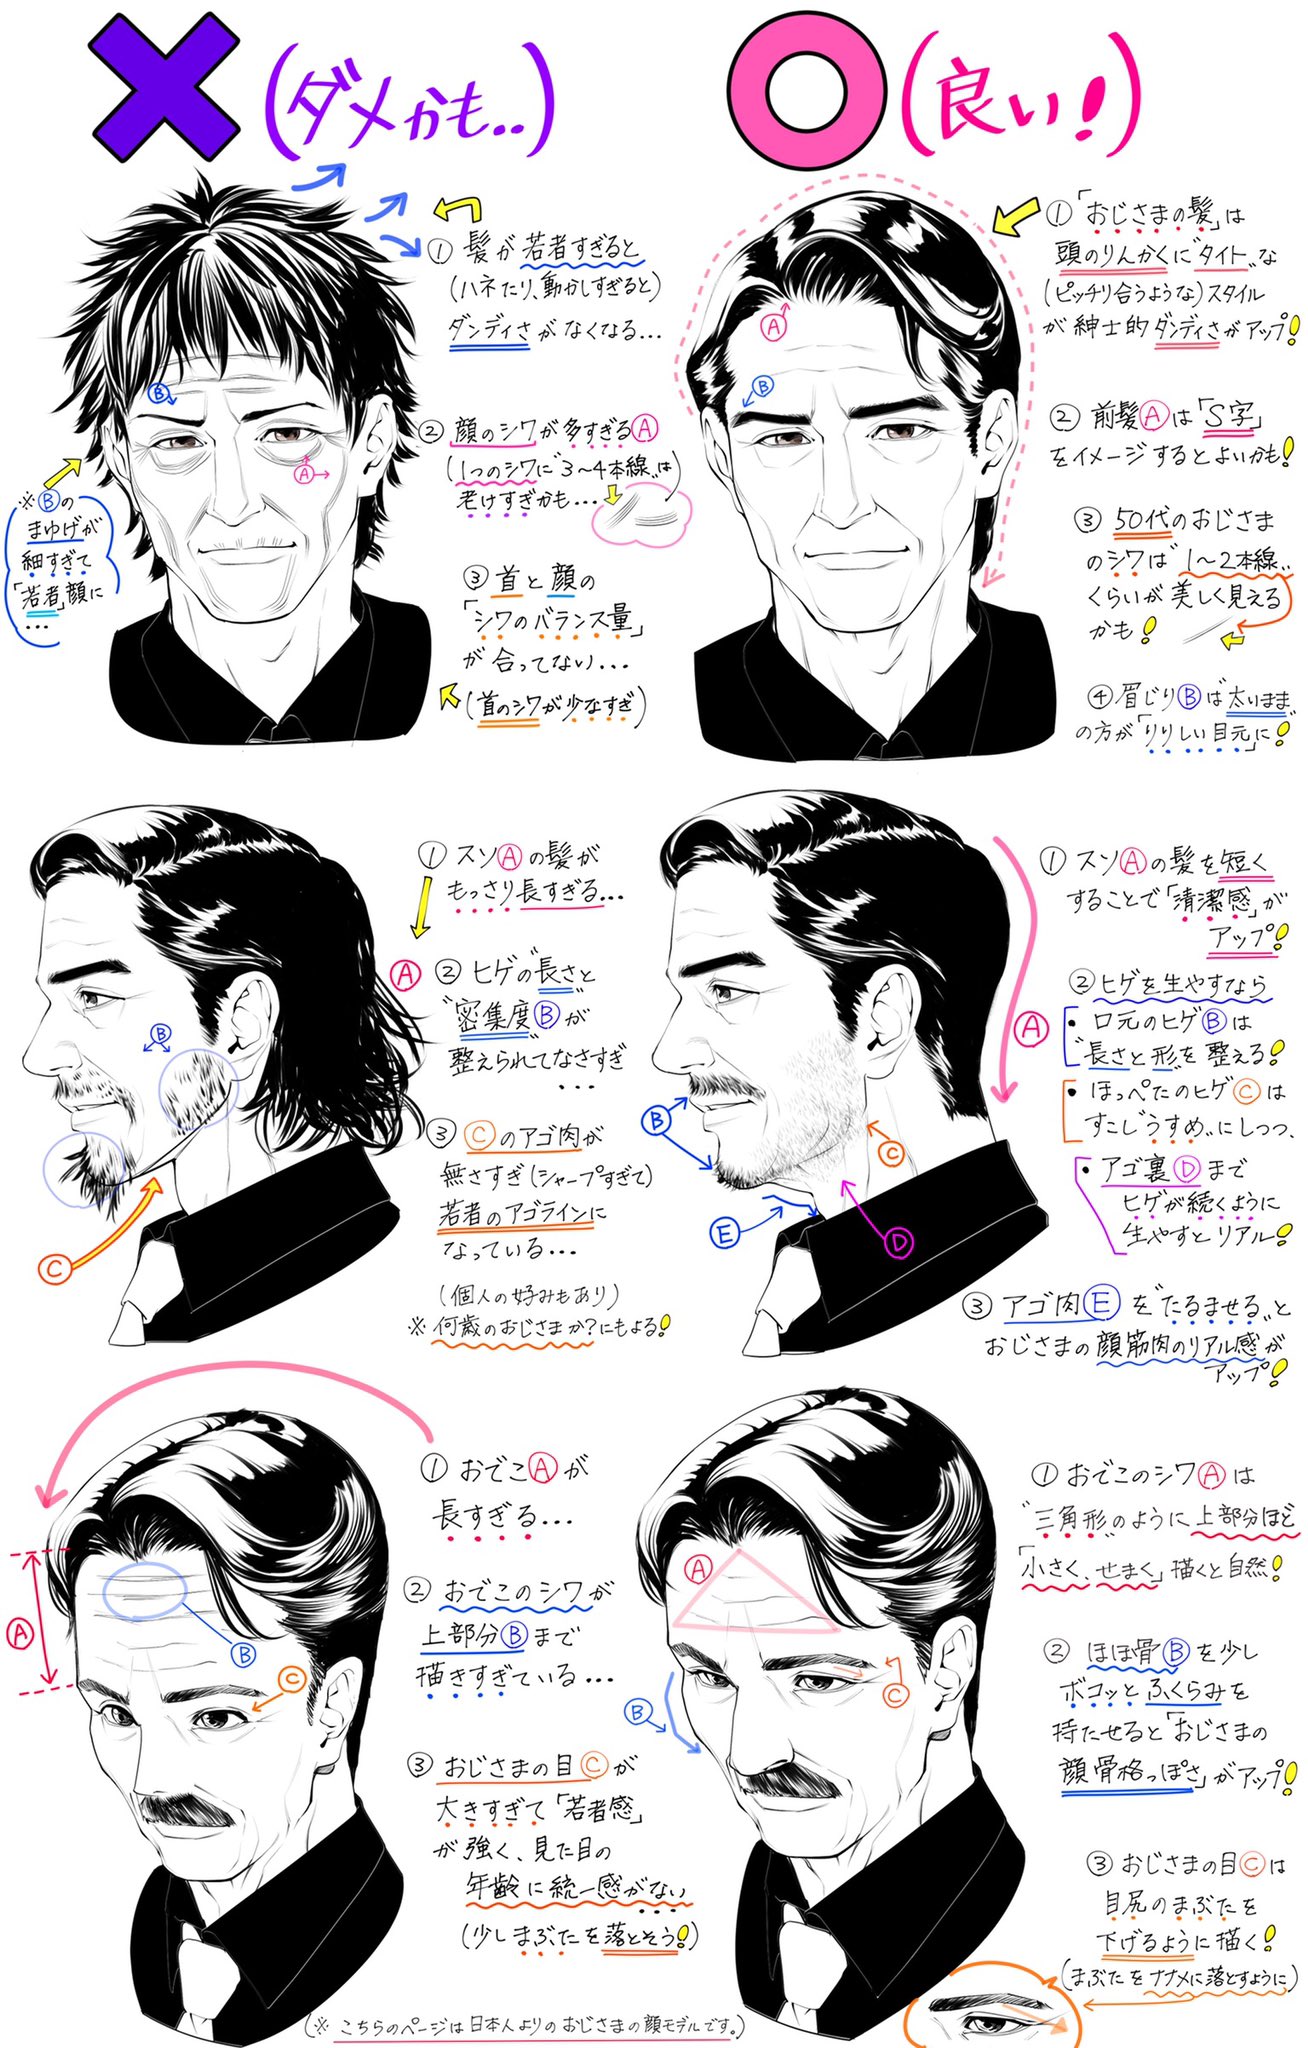 吉村拓也 イラスト講座 在 Twitter 上 イケメンおじさまの描き方 渋かっこいい男性の顔が上達する ダメかも と 良いかも T Co Rkzqei8a Twitter